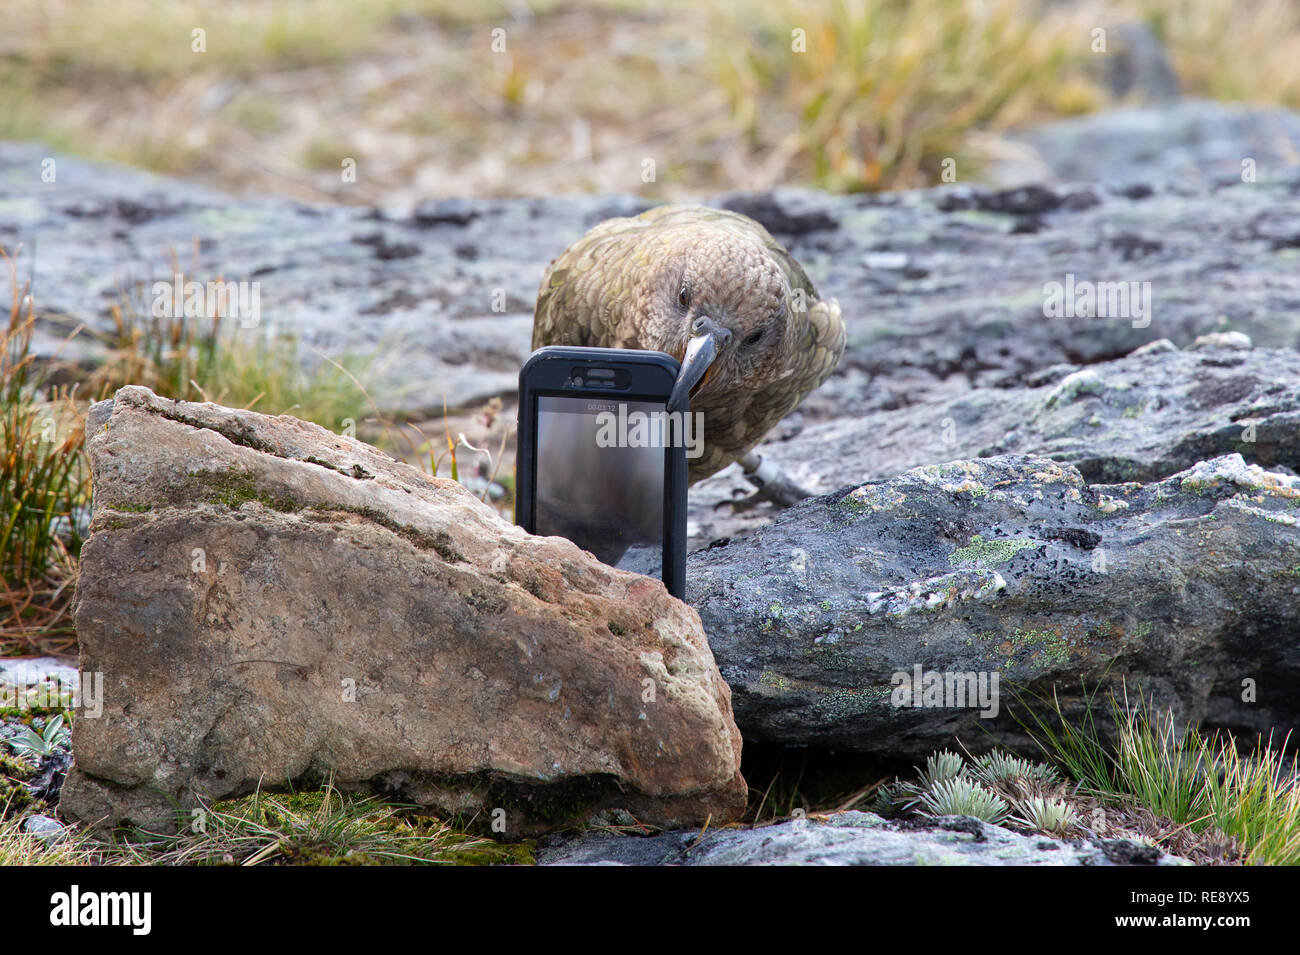 Kea giocando con un iPhone per gli escursionisti, Nuova Zelanda Foto Stock